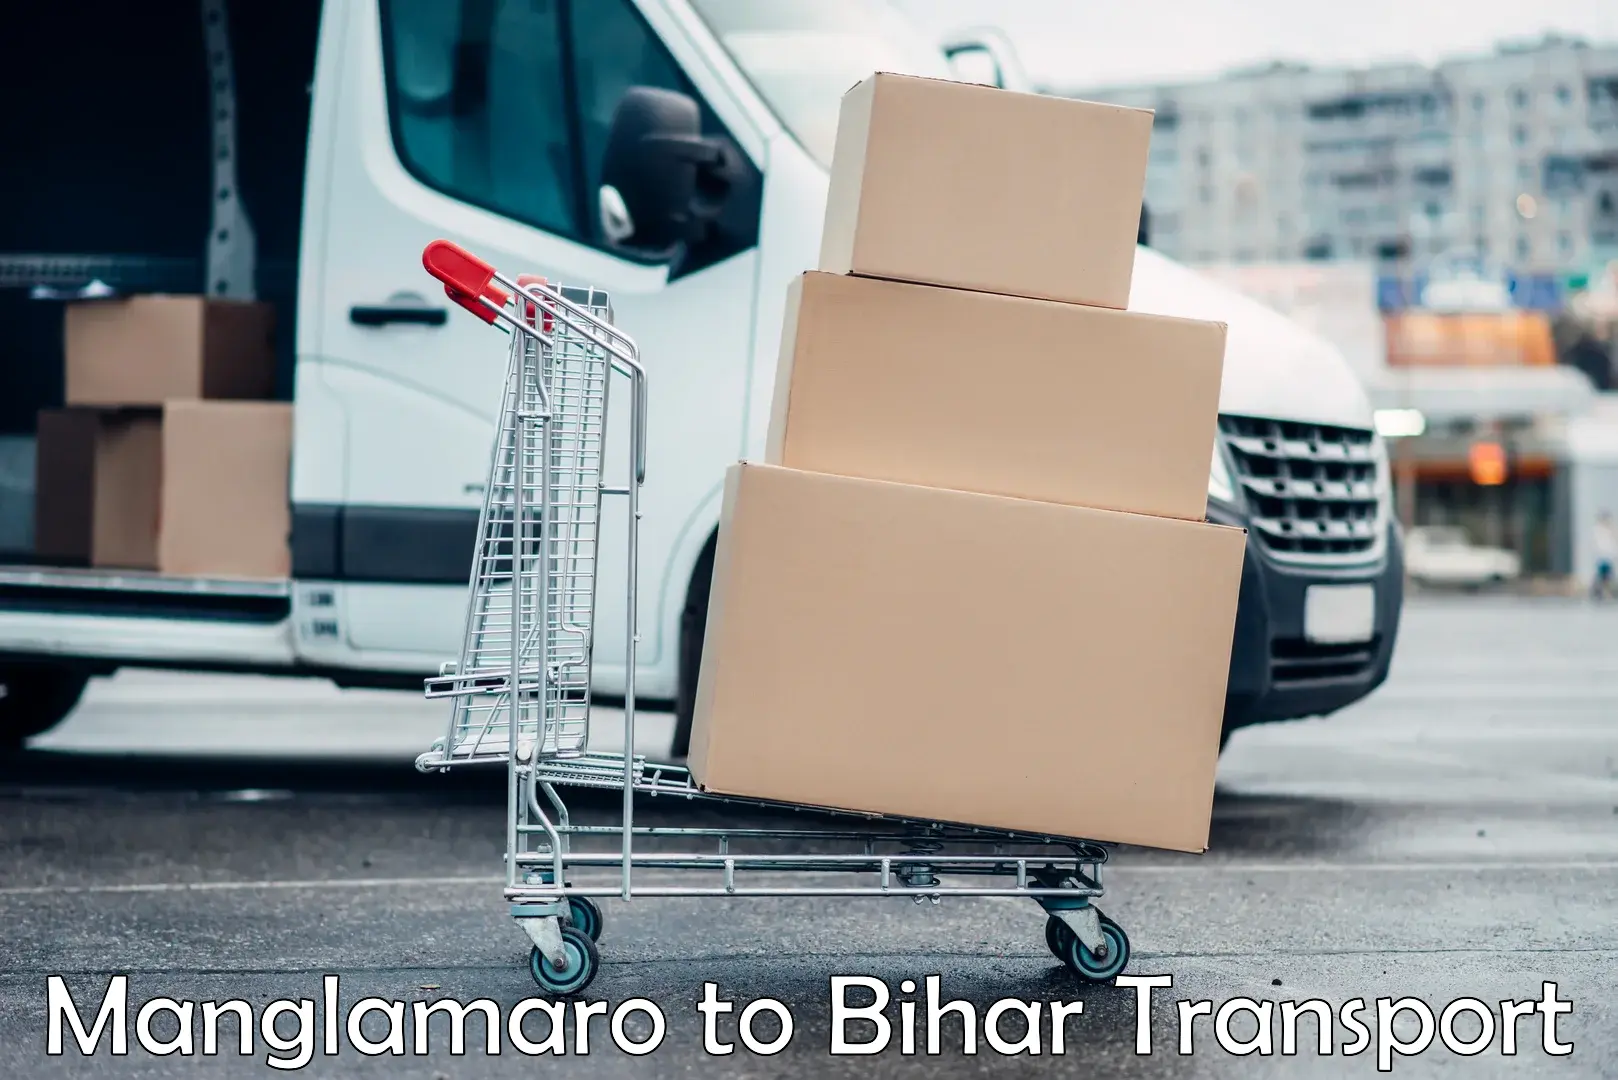 Cargo transport services Manglamaro to Narpatganj